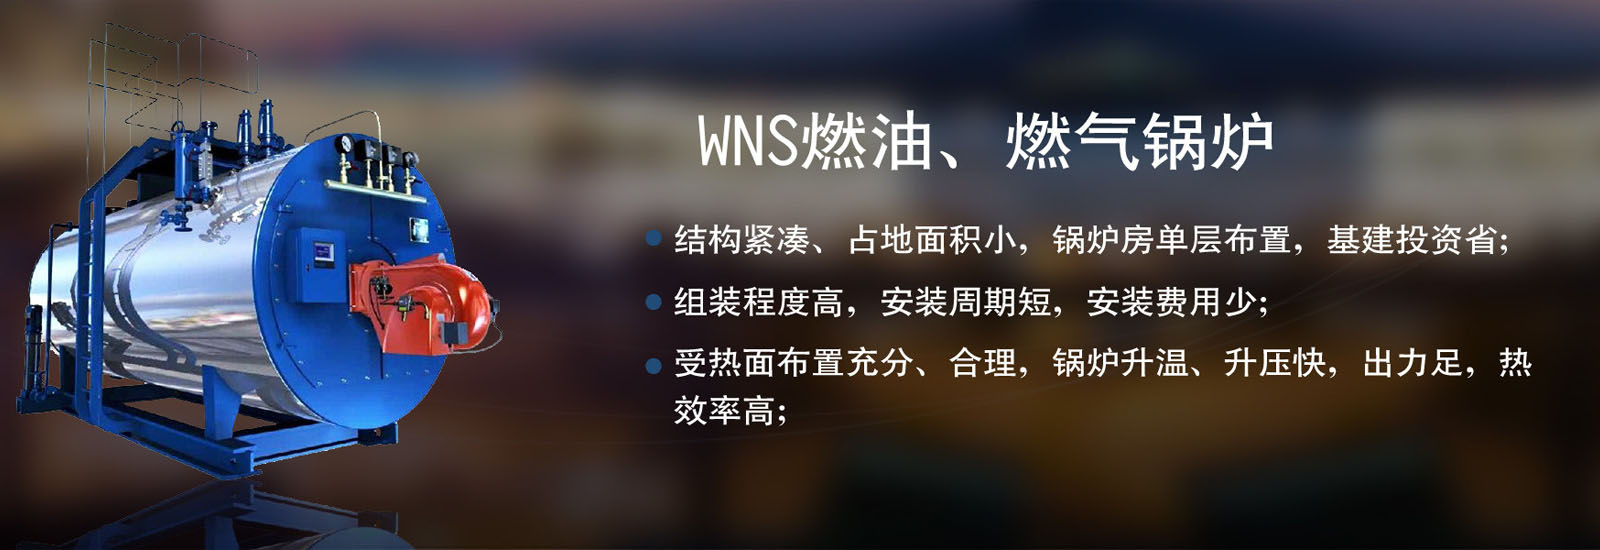 济宁燃气锅炉厂家网站推广方案由富海360制作